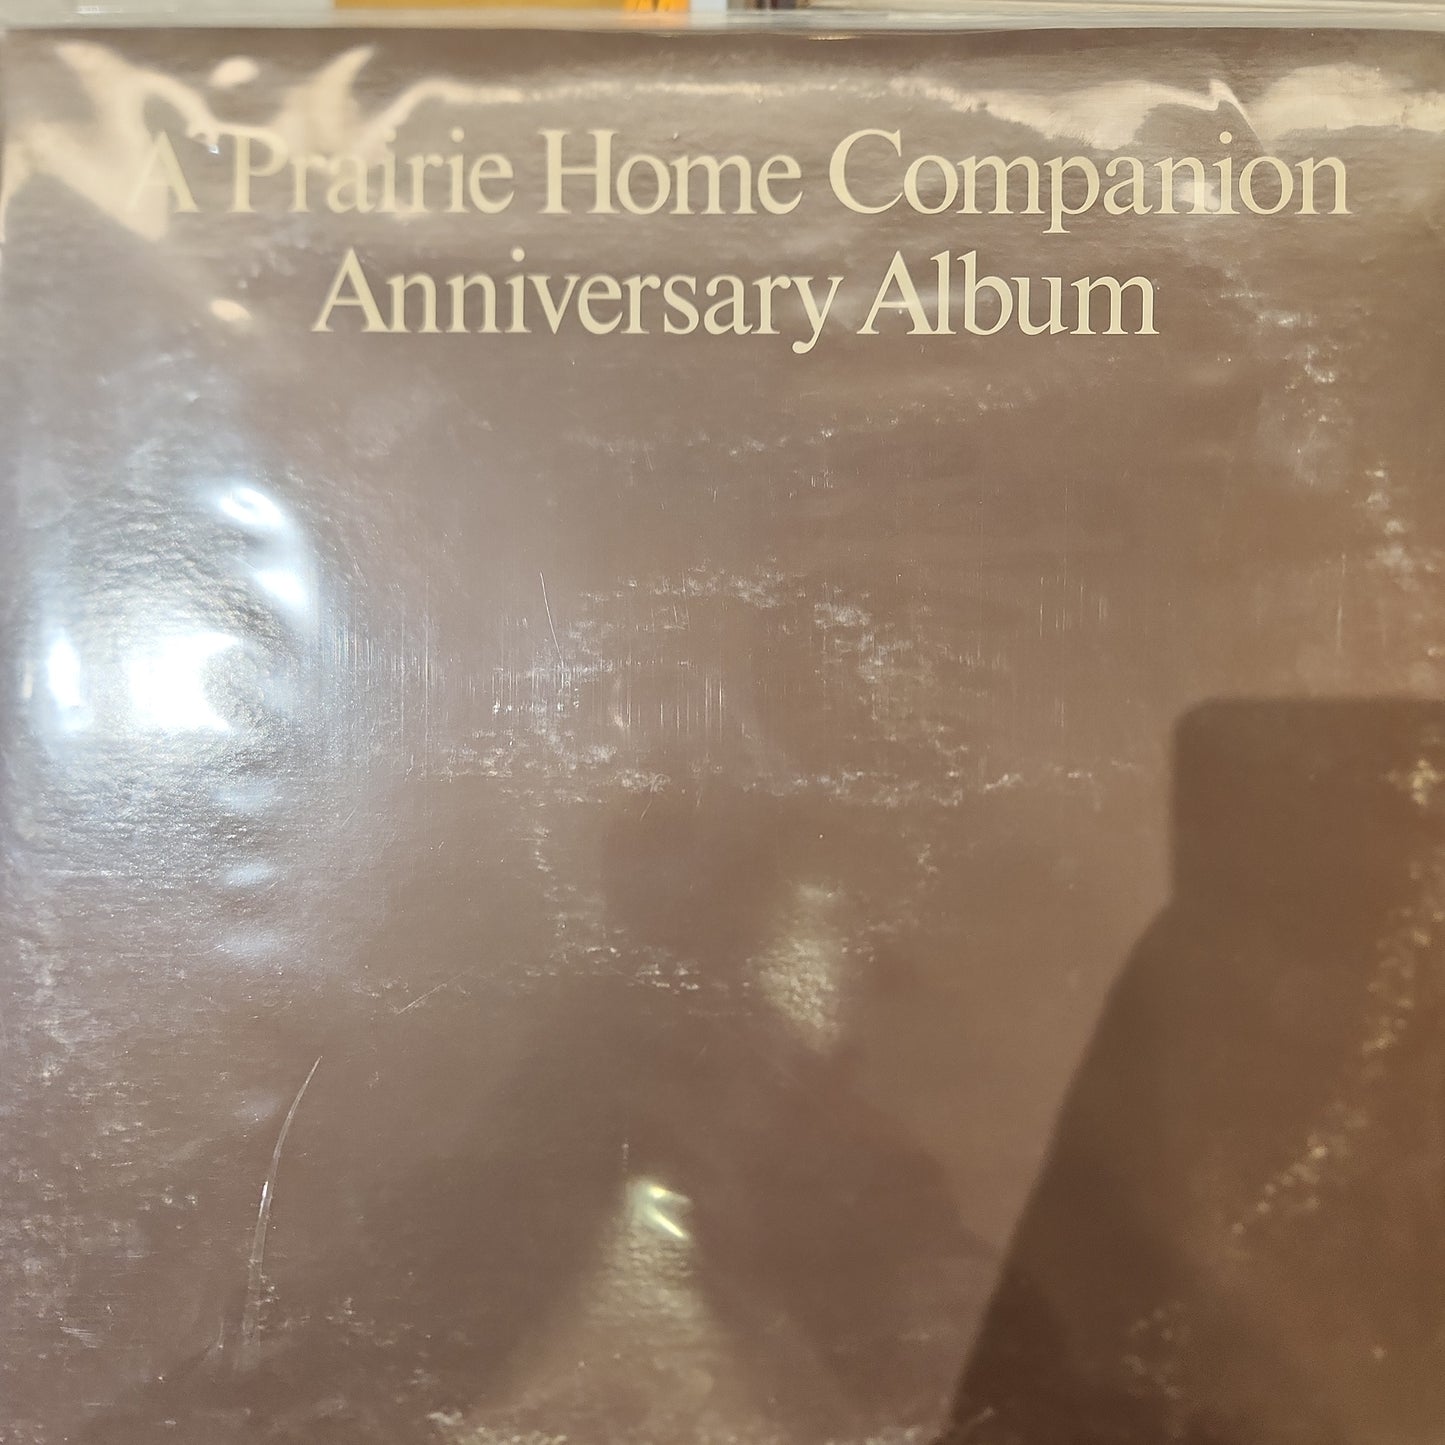 A Prairie Home Companion - Anniversary Album